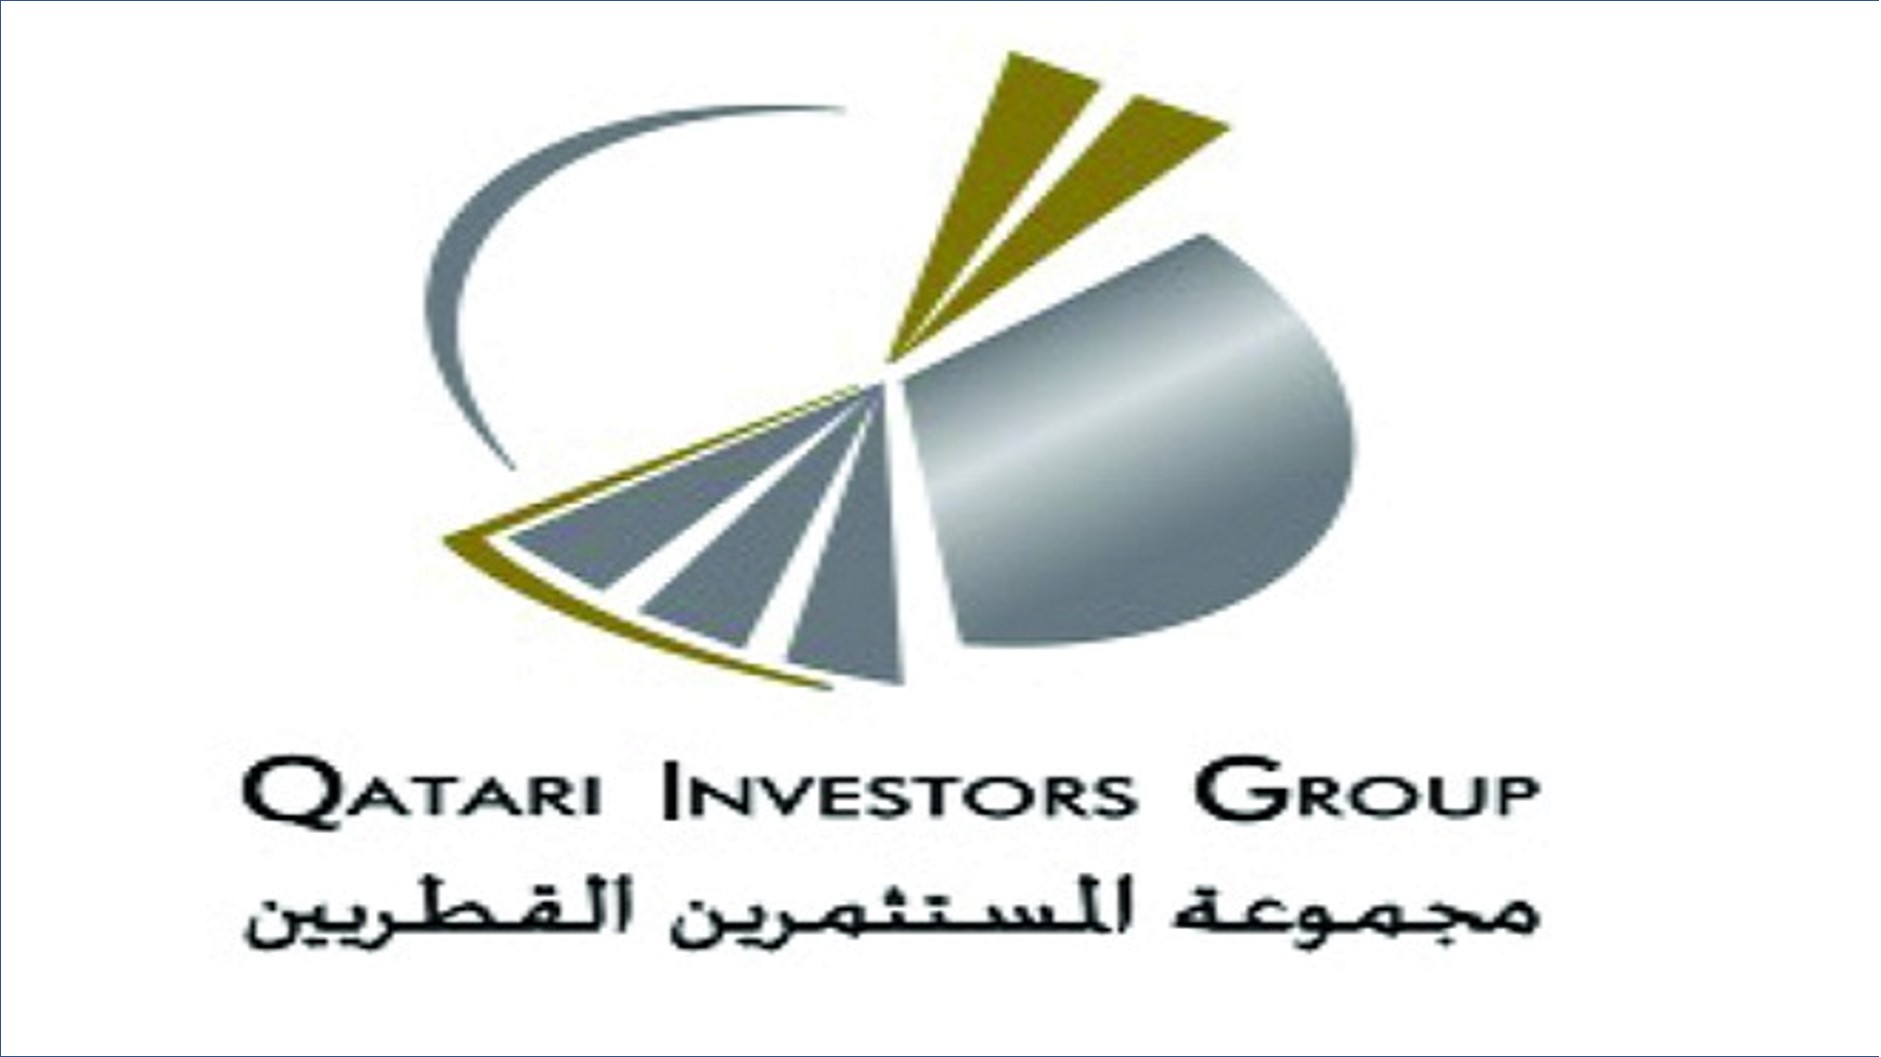 مجموعة المستثمرين القطريين تعلن عن فرص وظيفية جديدة